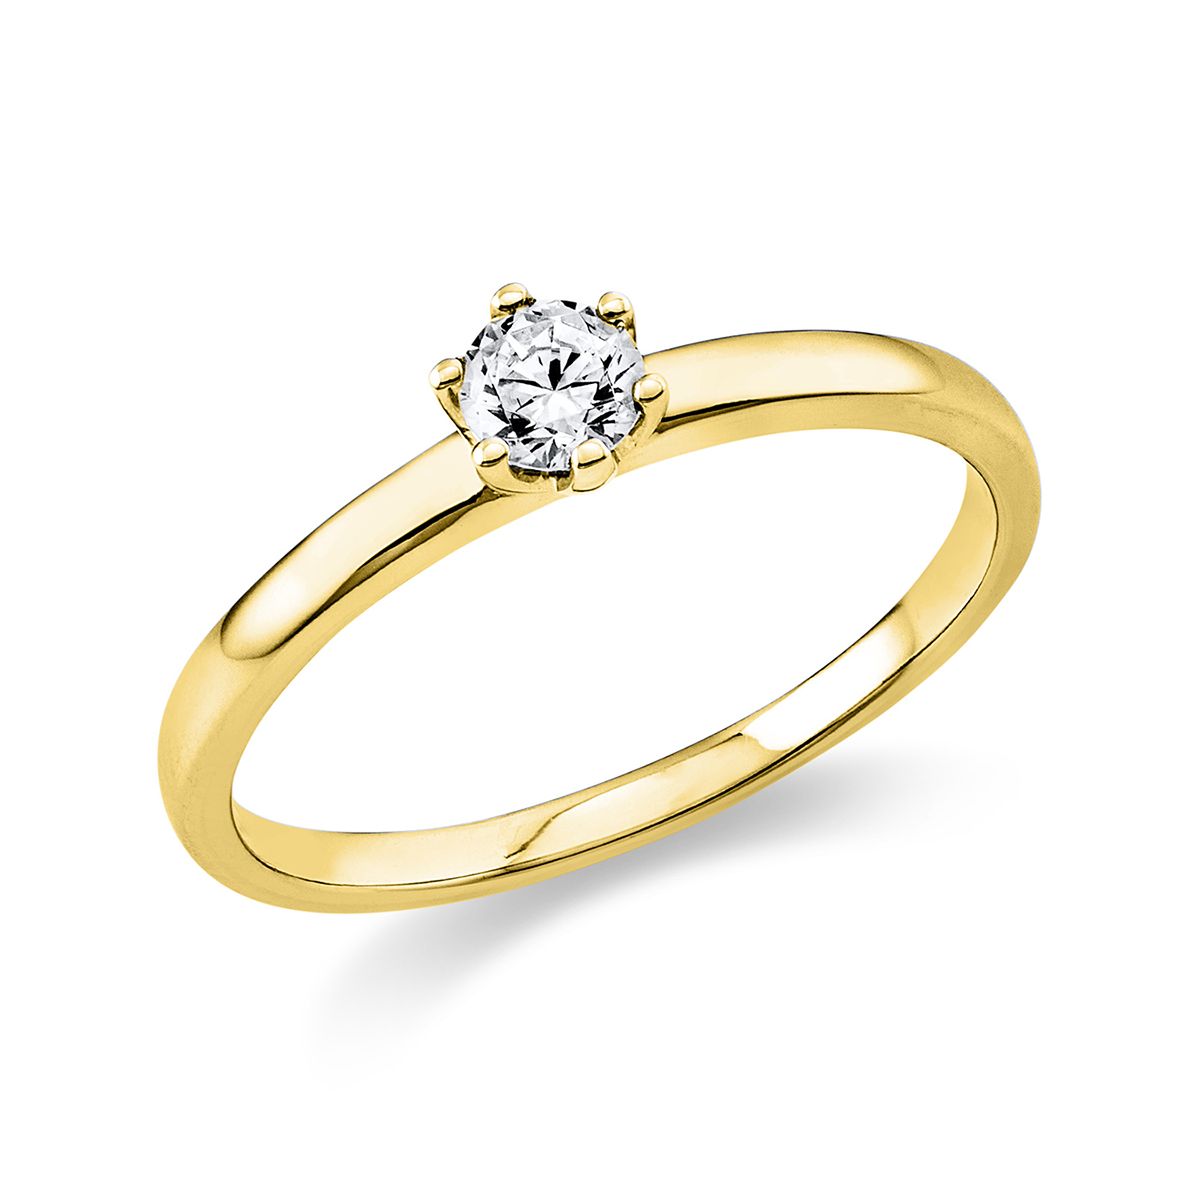 Solitär-Ring 6-Griff-Fassung 585/14K Gelbgold, Diamant 0.2 ct.